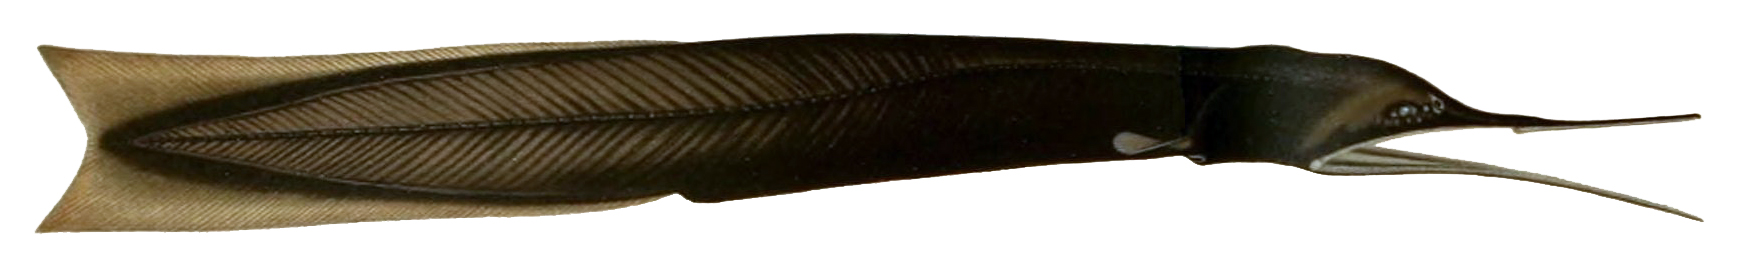 Bobtail snipe eel wallpaper